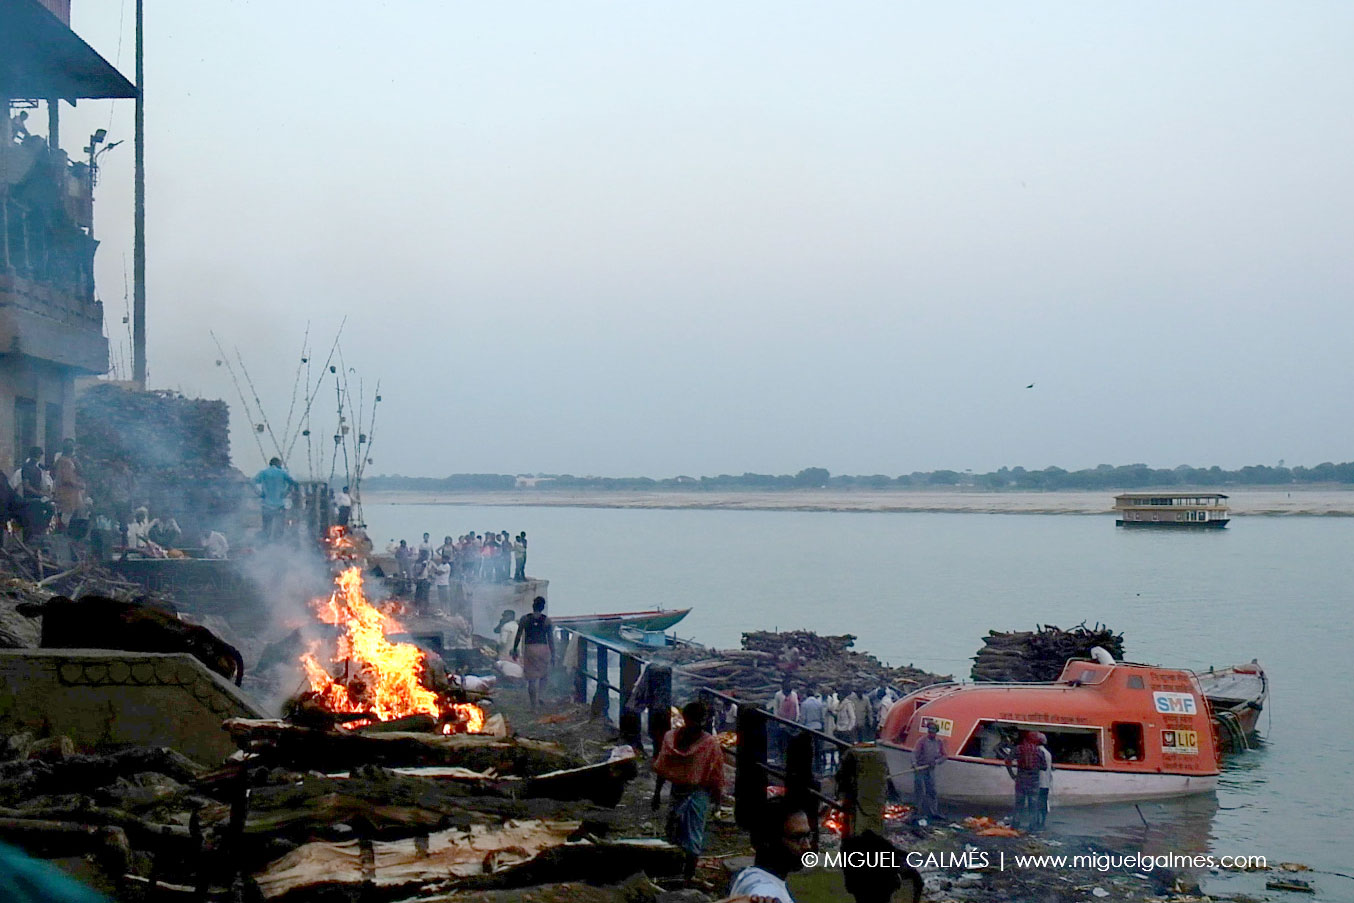 Varanasi, the last home